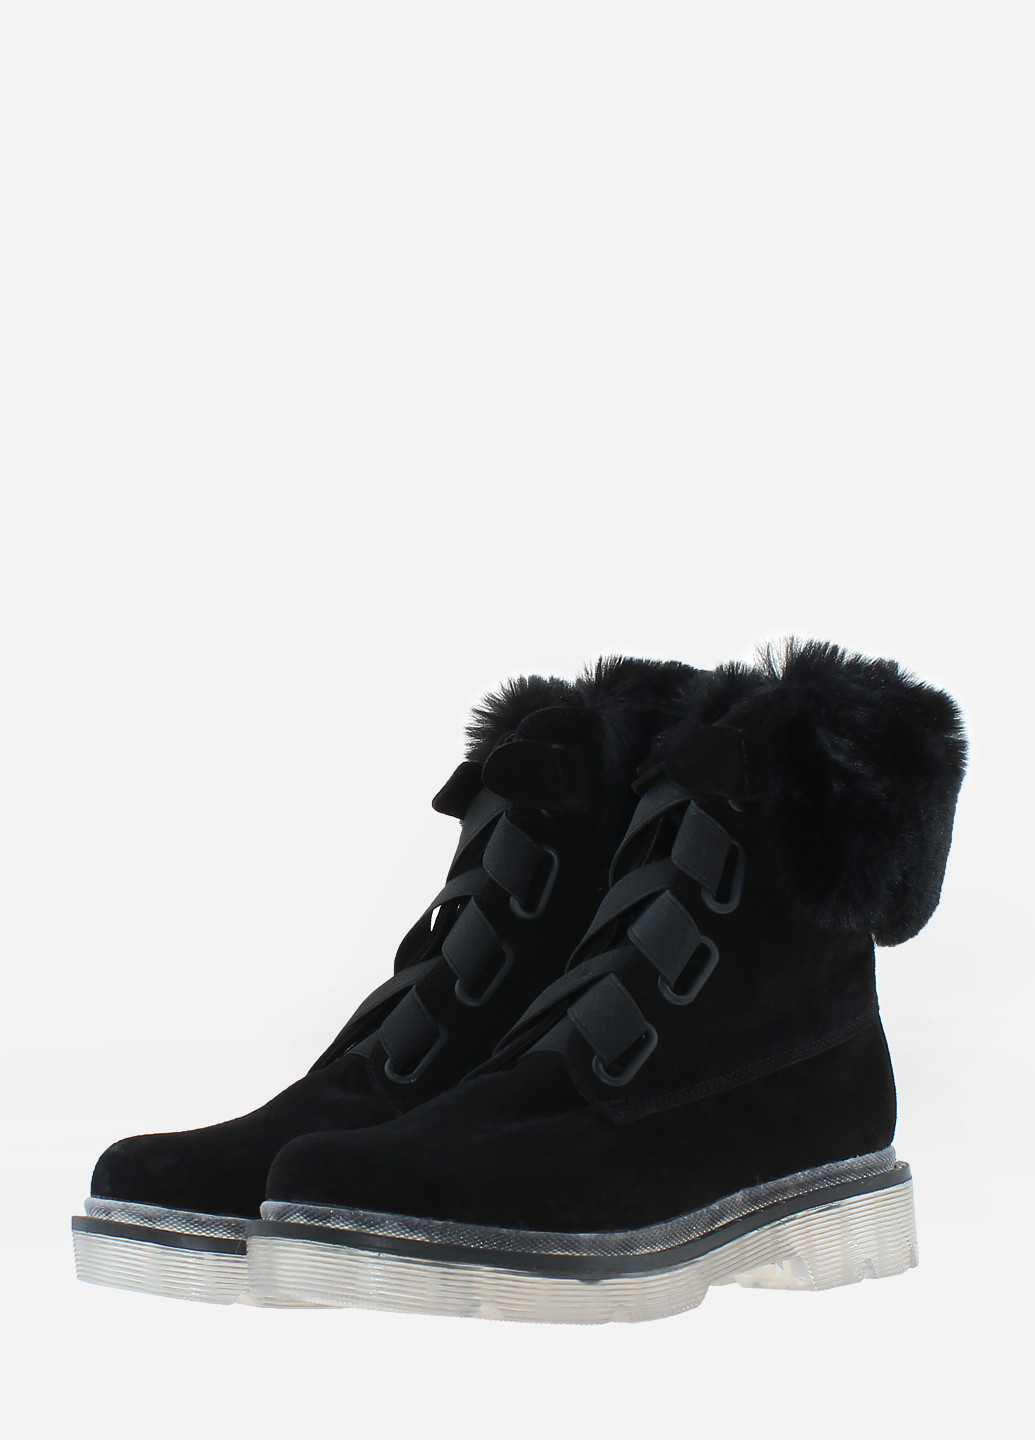 Зимние ботинки rd608-11 черный Dalis из натуральной замши